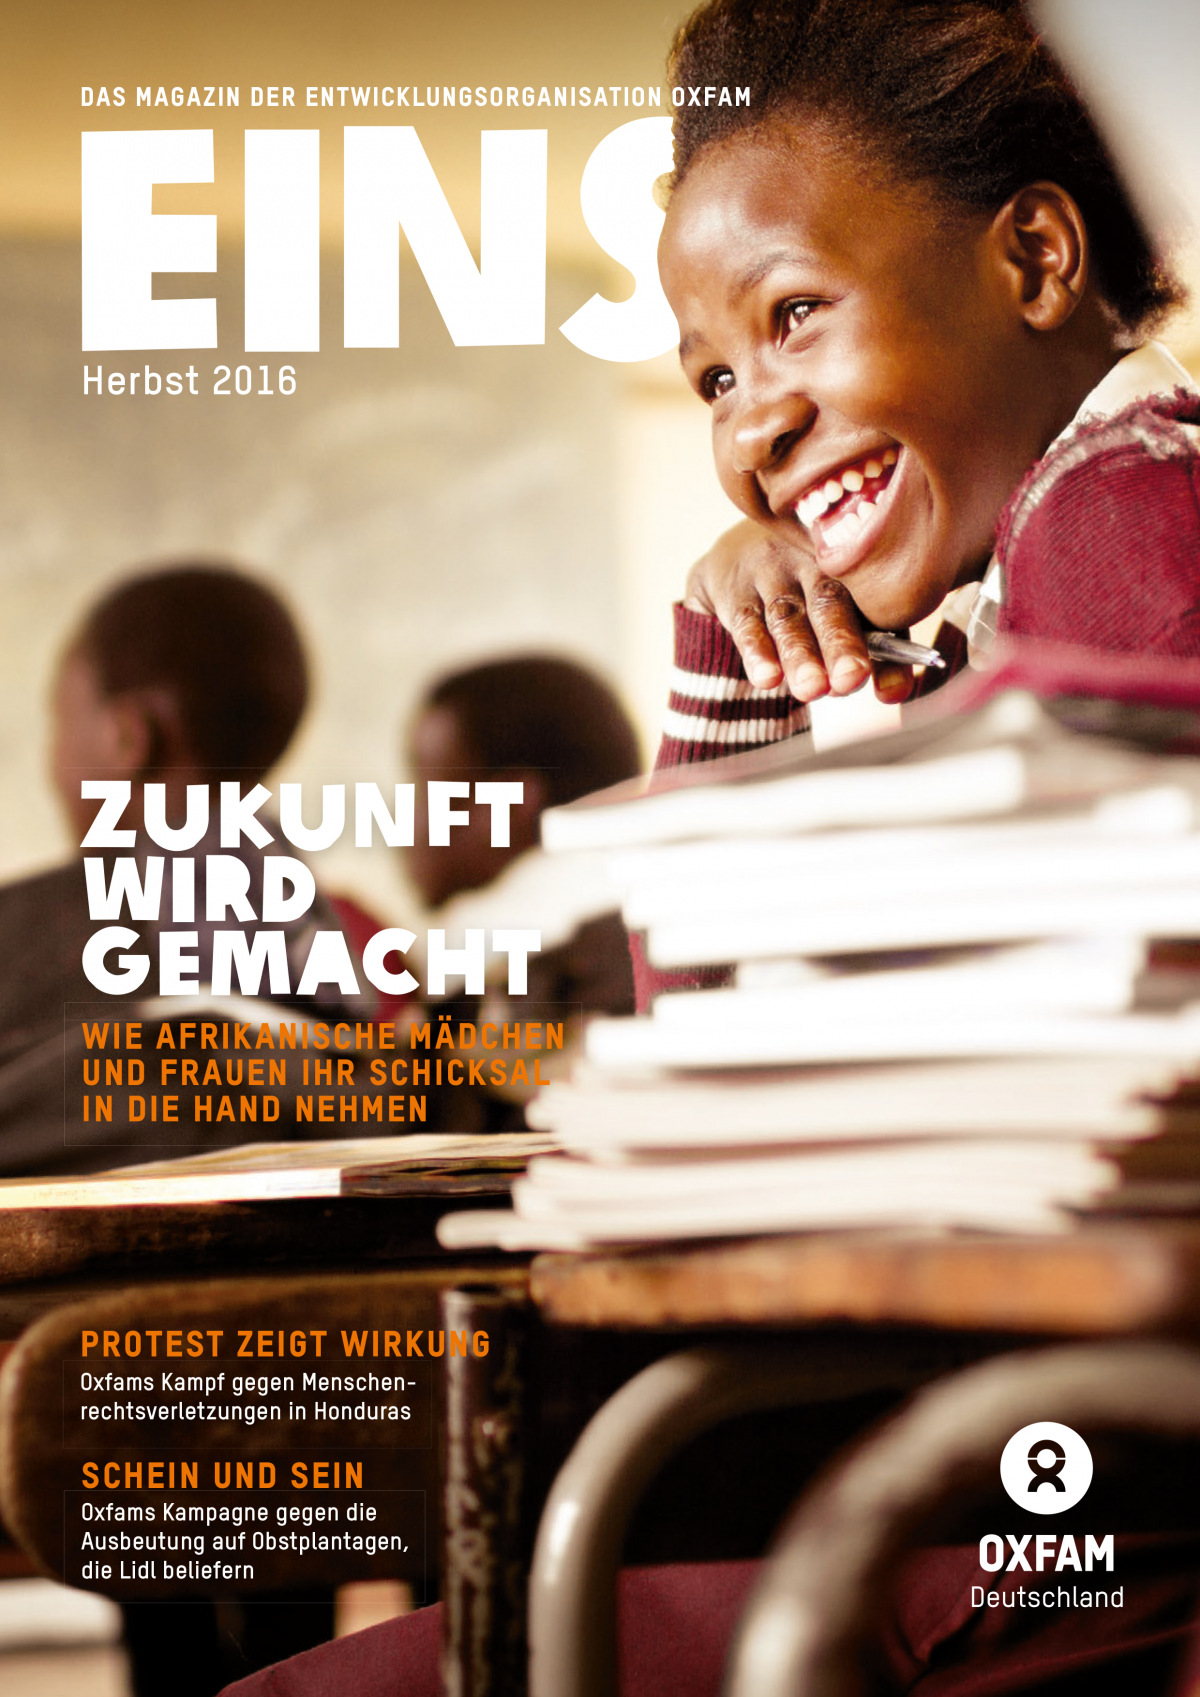 Titelbild vom Oxfam-Magazin EINS (Herbst 2016)